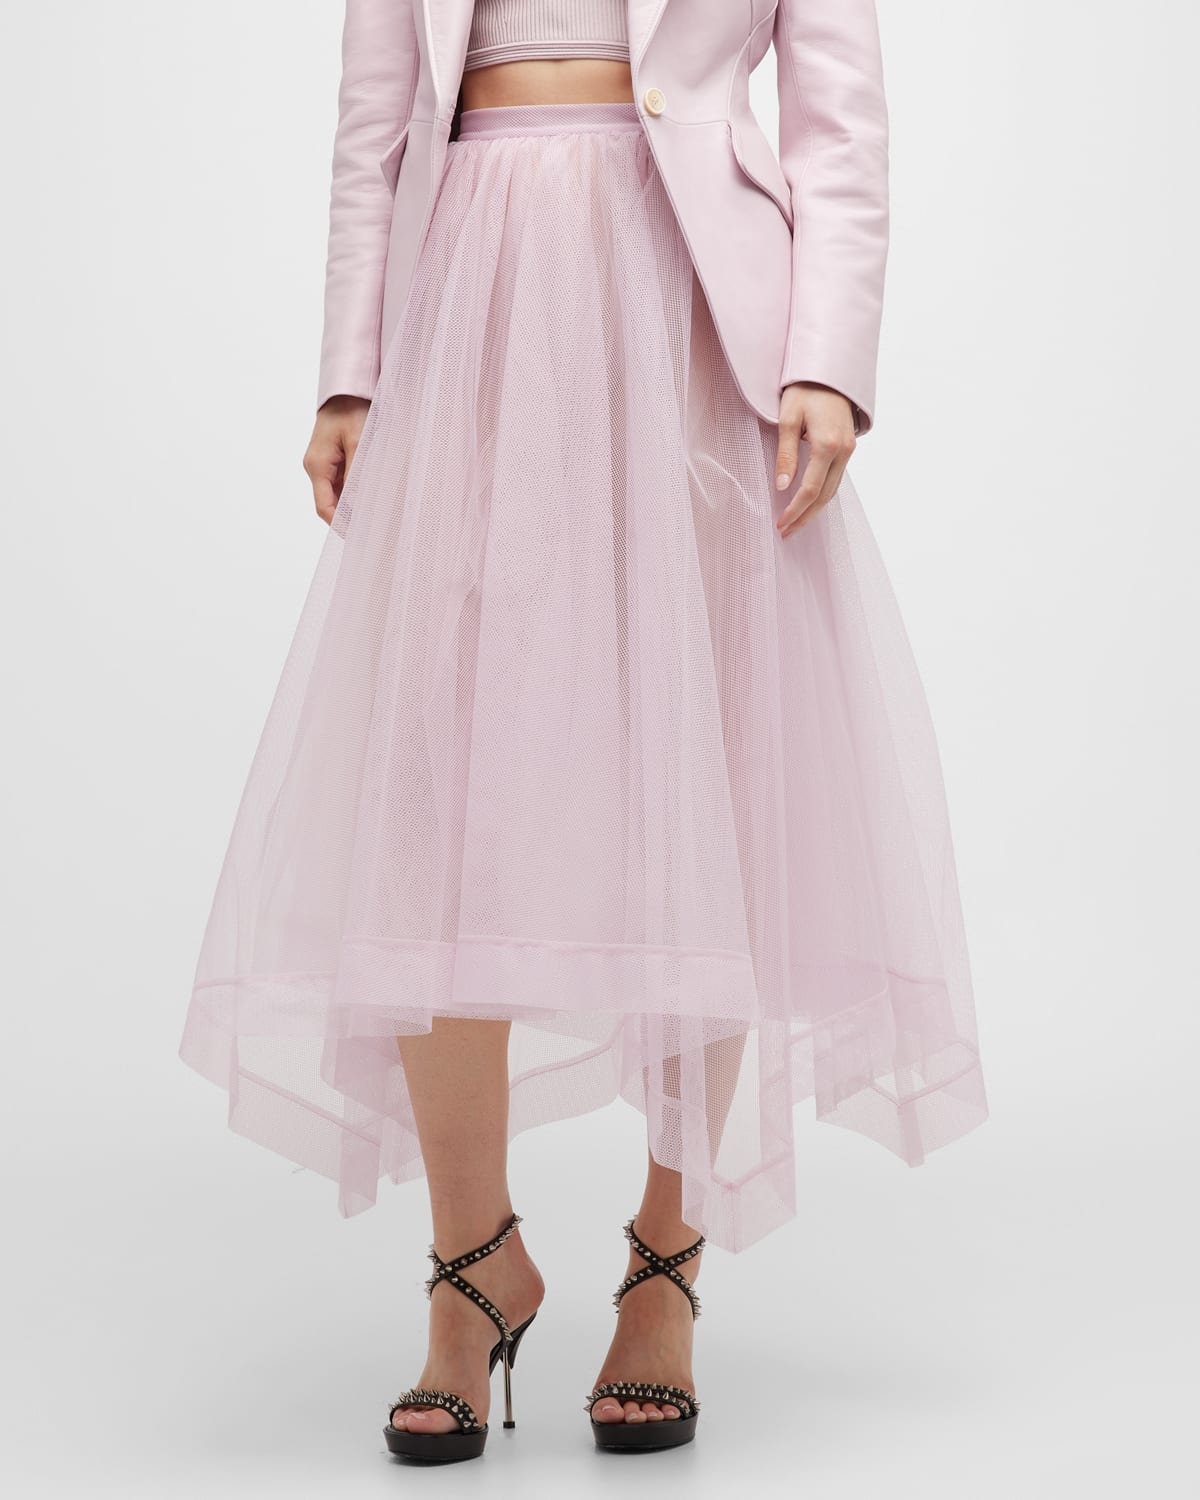 Alexander McQueen Asymmetric Volume Dress with Organza Skirt | Neiman ...